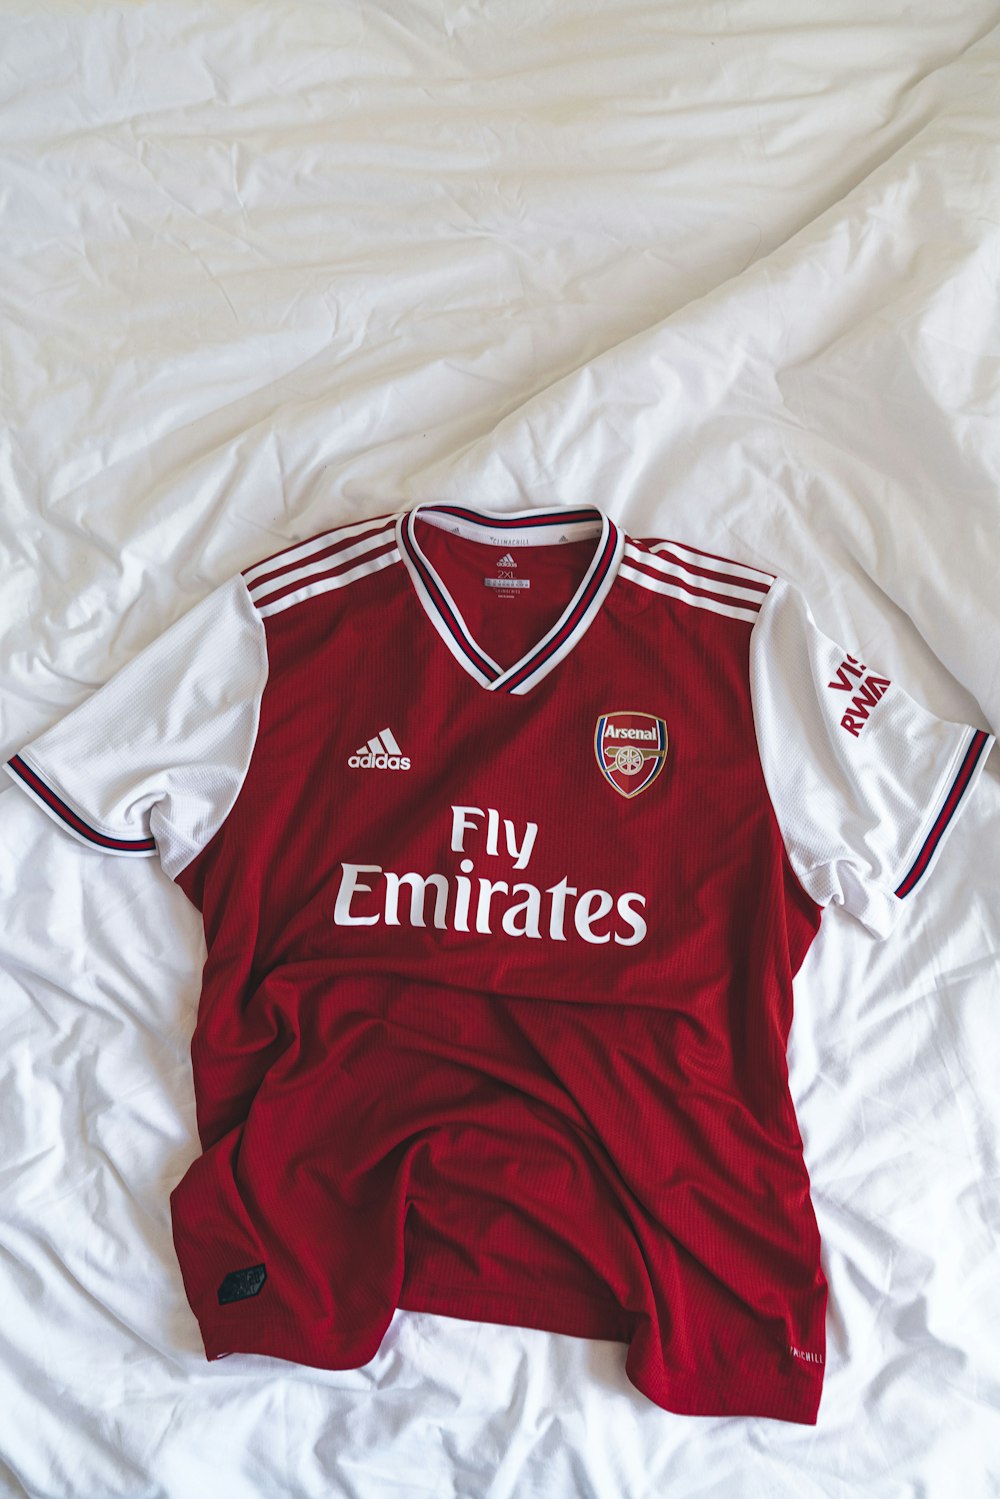 beneficio mostaza agricultores Foto camiseta roja y blanca adidas Fly Emirates – Imagen Arsenal gratis en  Unsplash